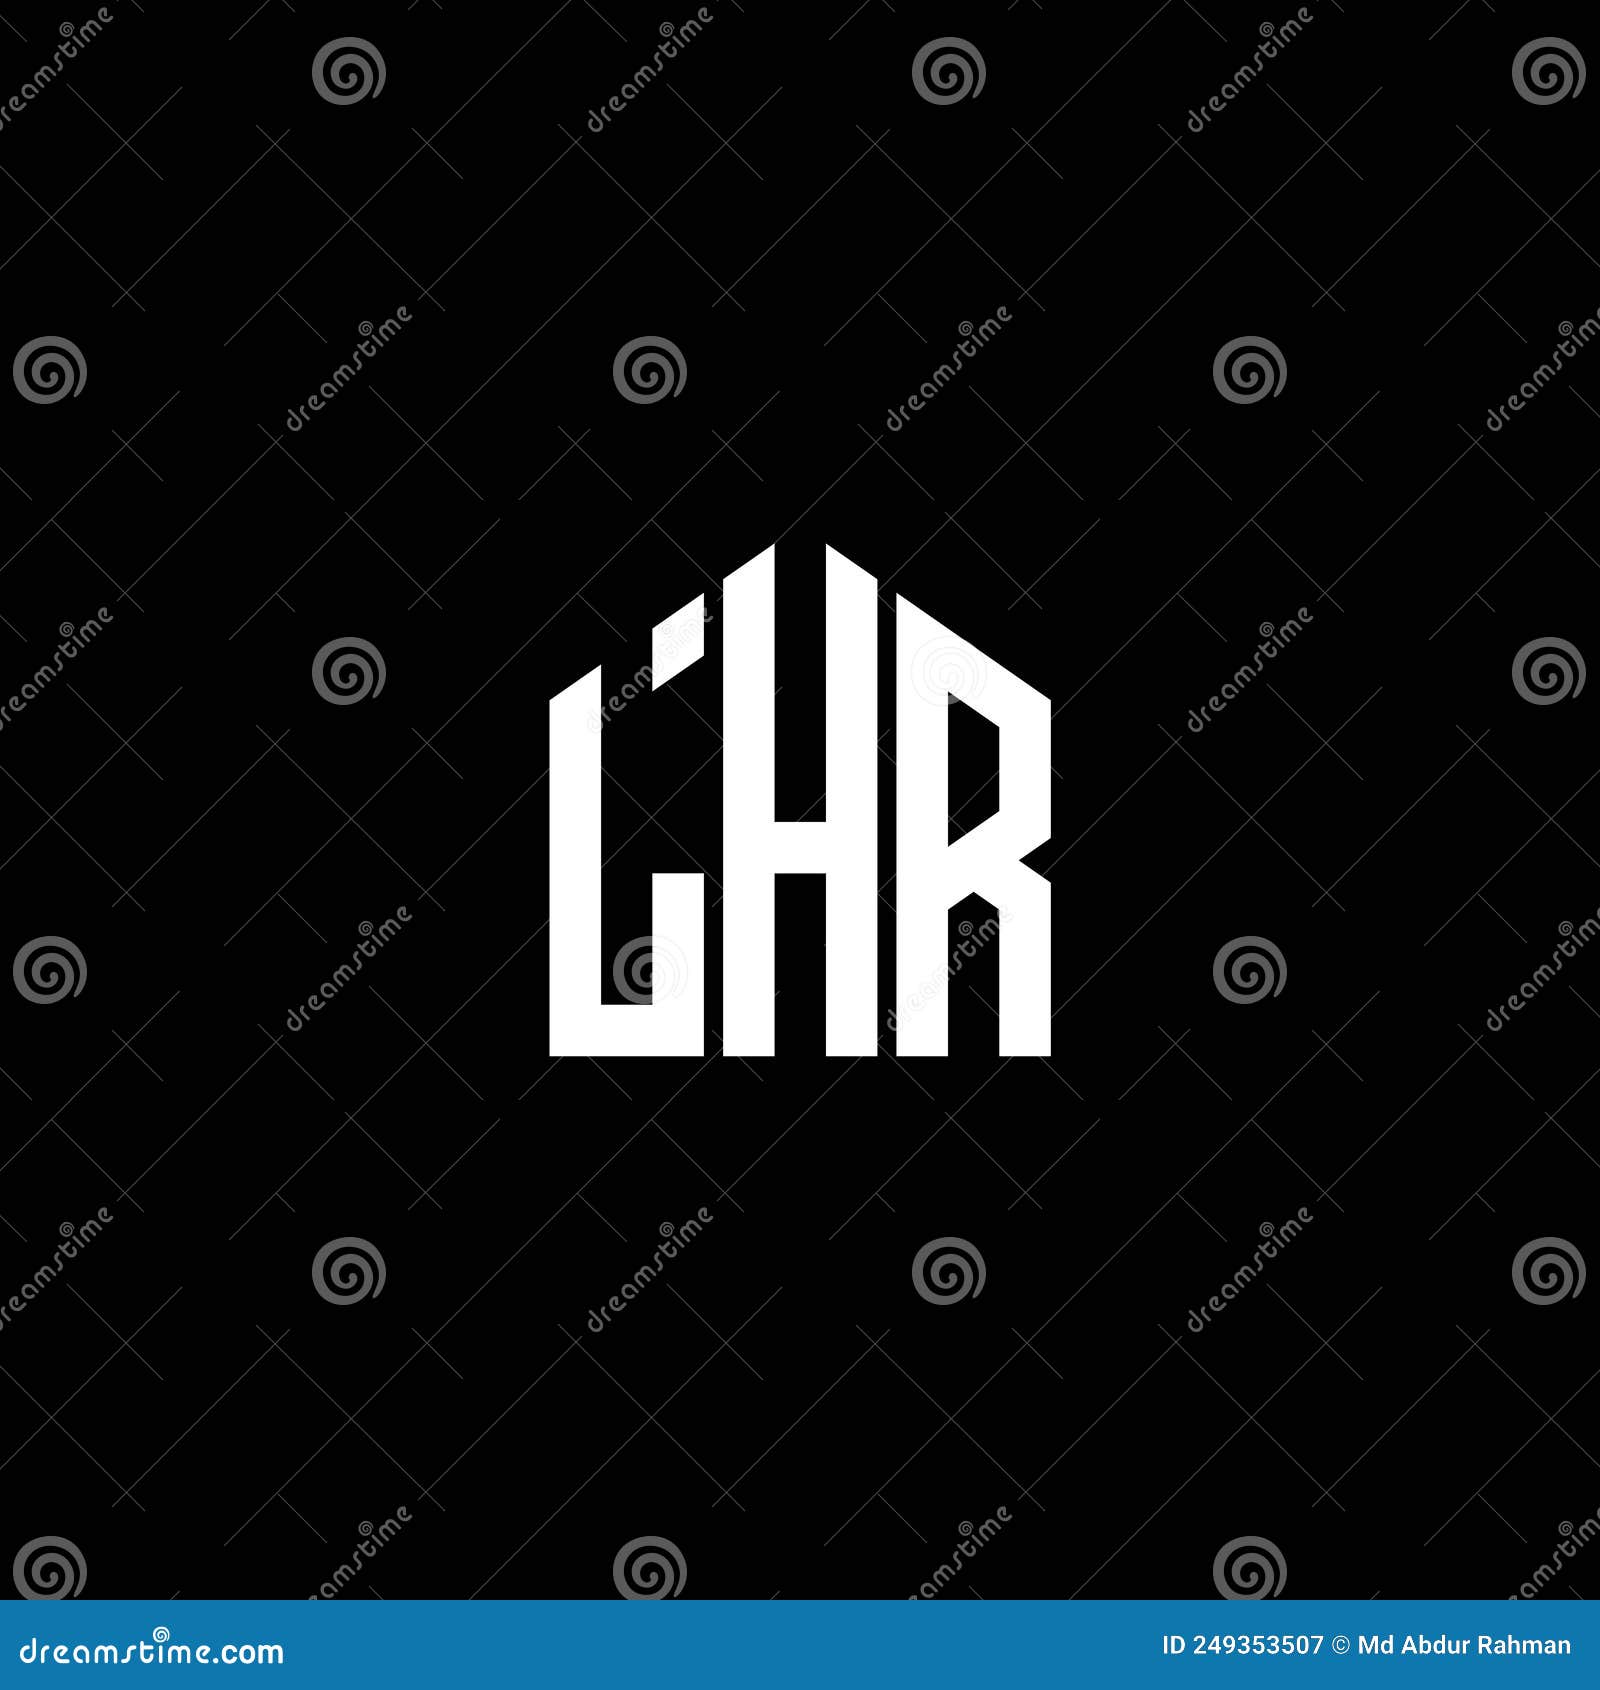 lhr letter logo  on black background. lhr creative initials letter logo concept. lhr letter .lhr letter logo  on